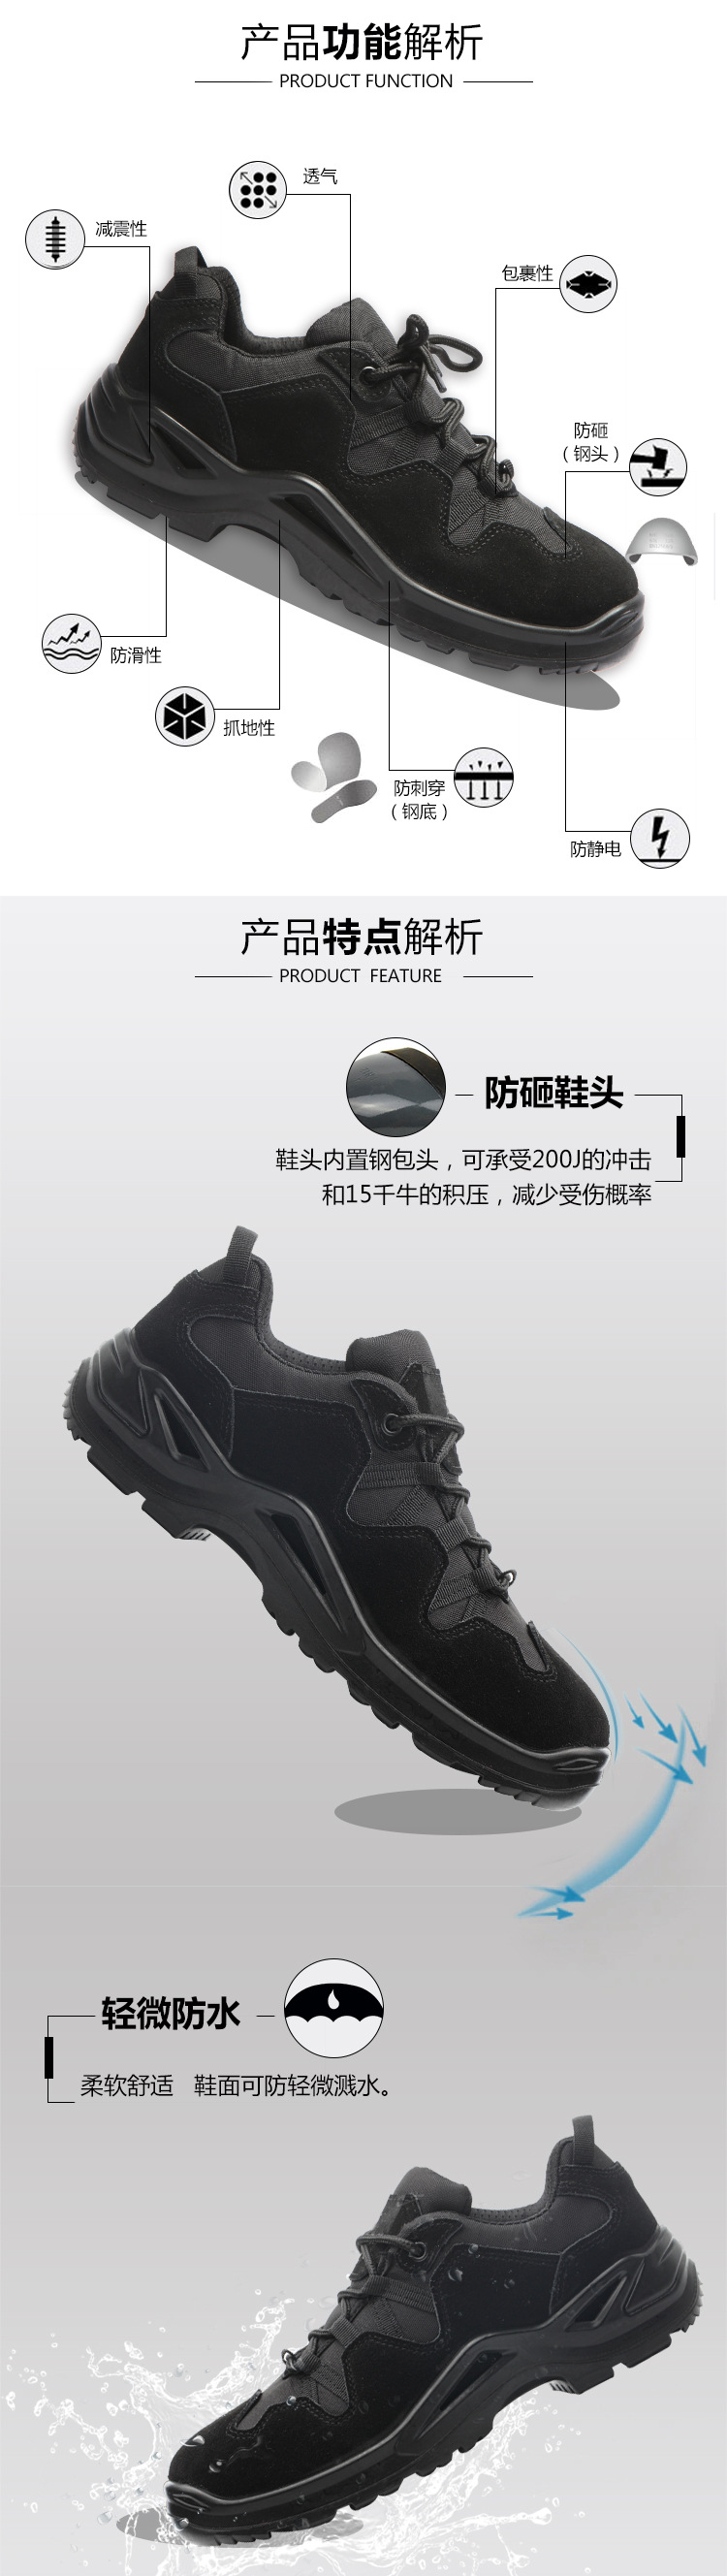 Chaussures de sécurité - Dégâts de perçage - Ref 3404941 Image 14